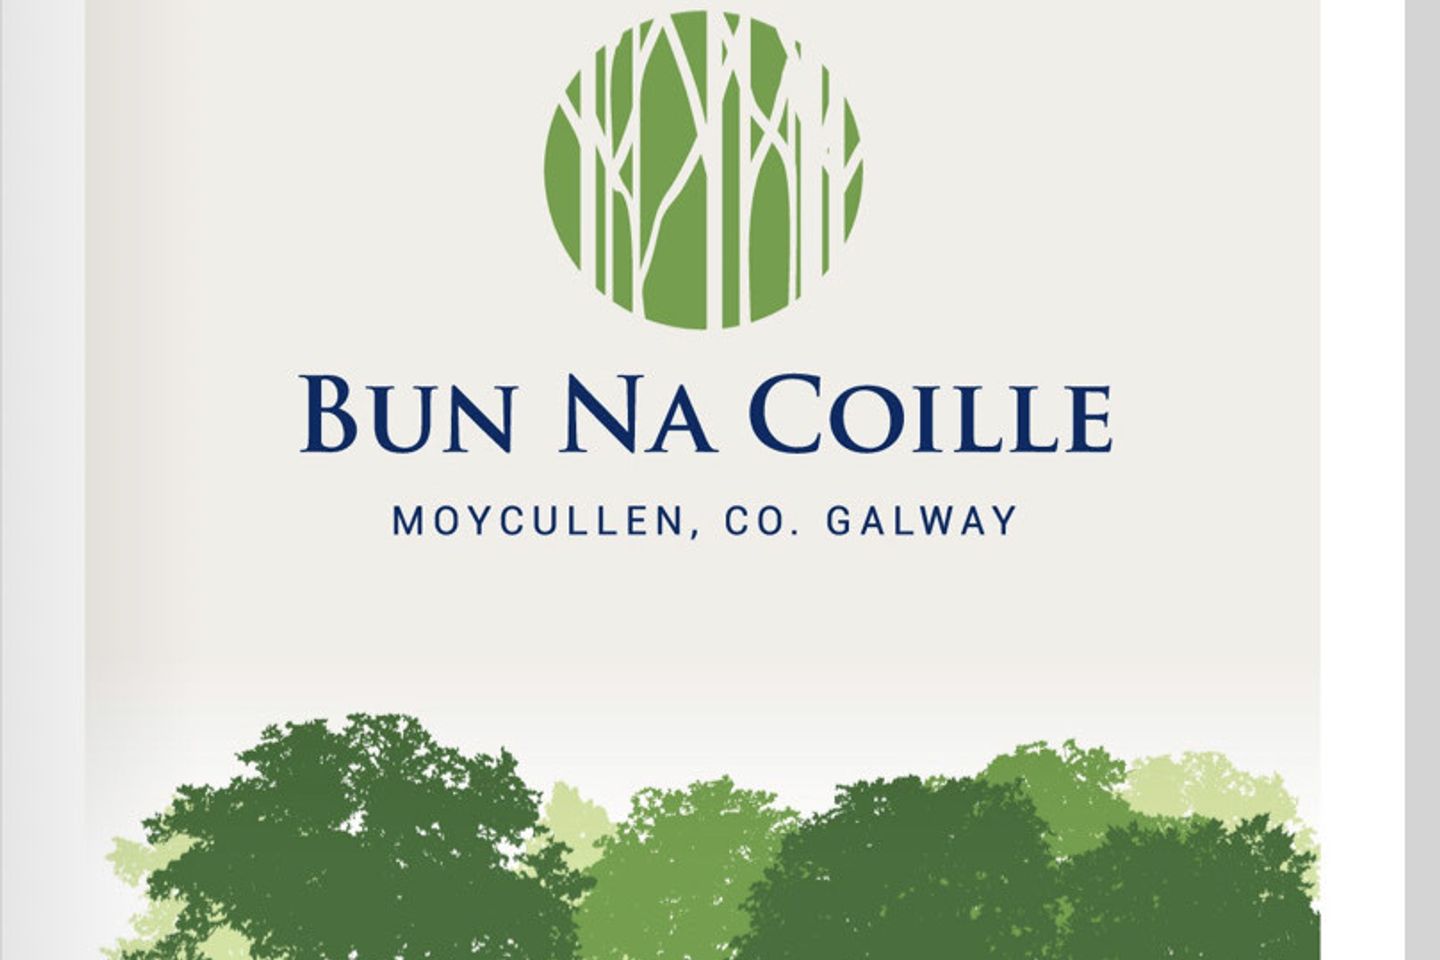 Bun Na Coille, Moycullen, Co. Galway